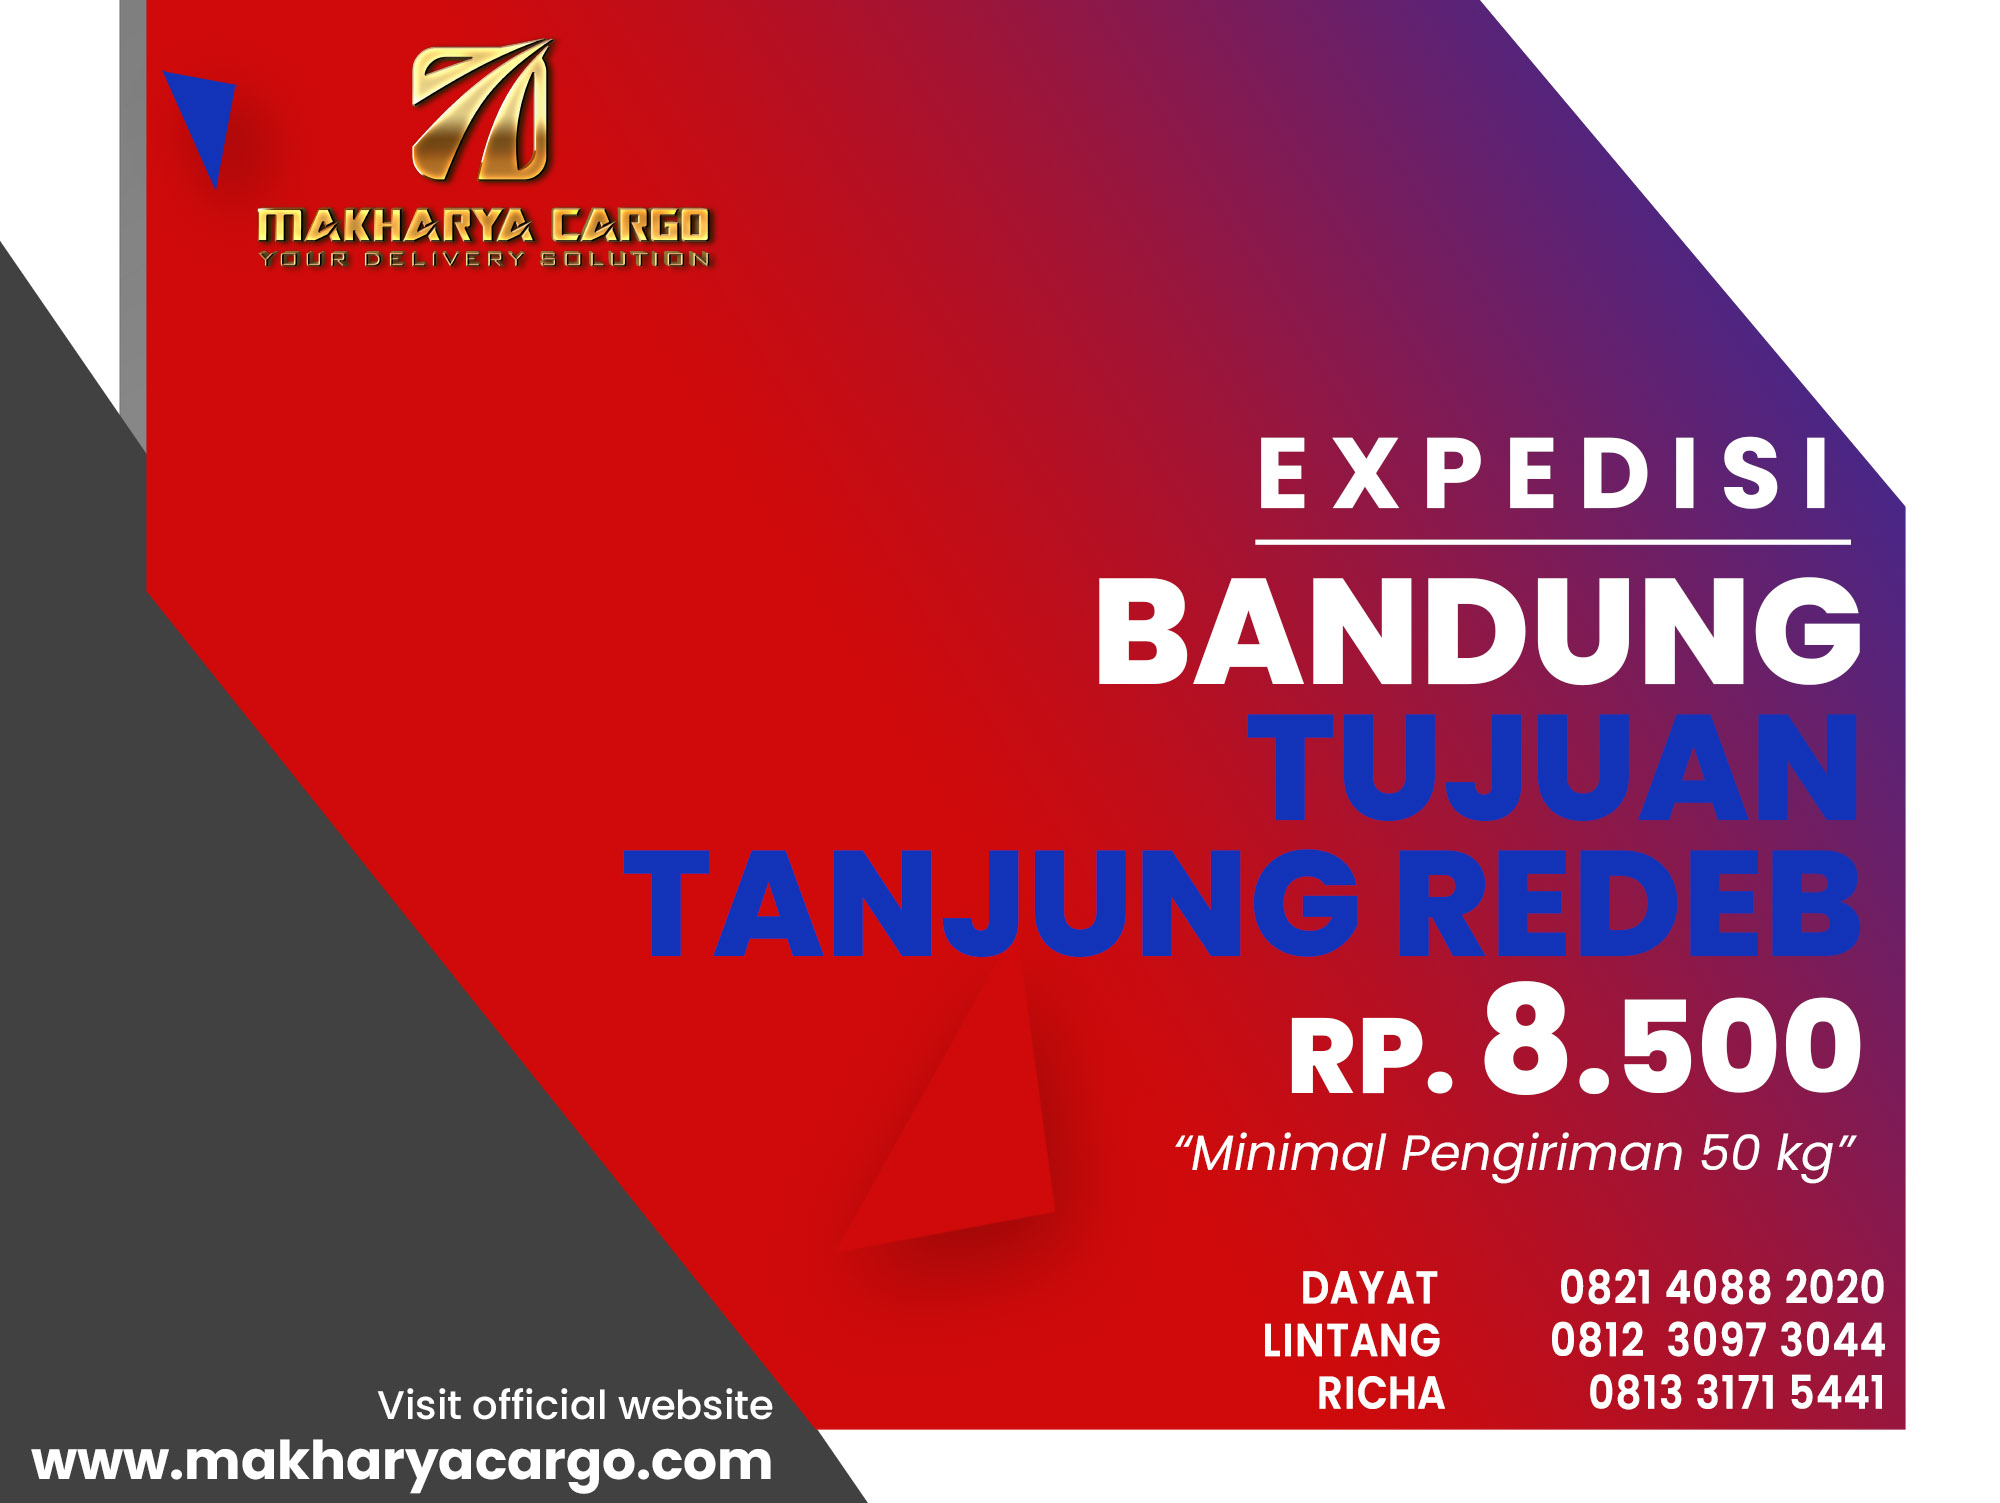 Ekspedisi Bandung Tanjung Redeb